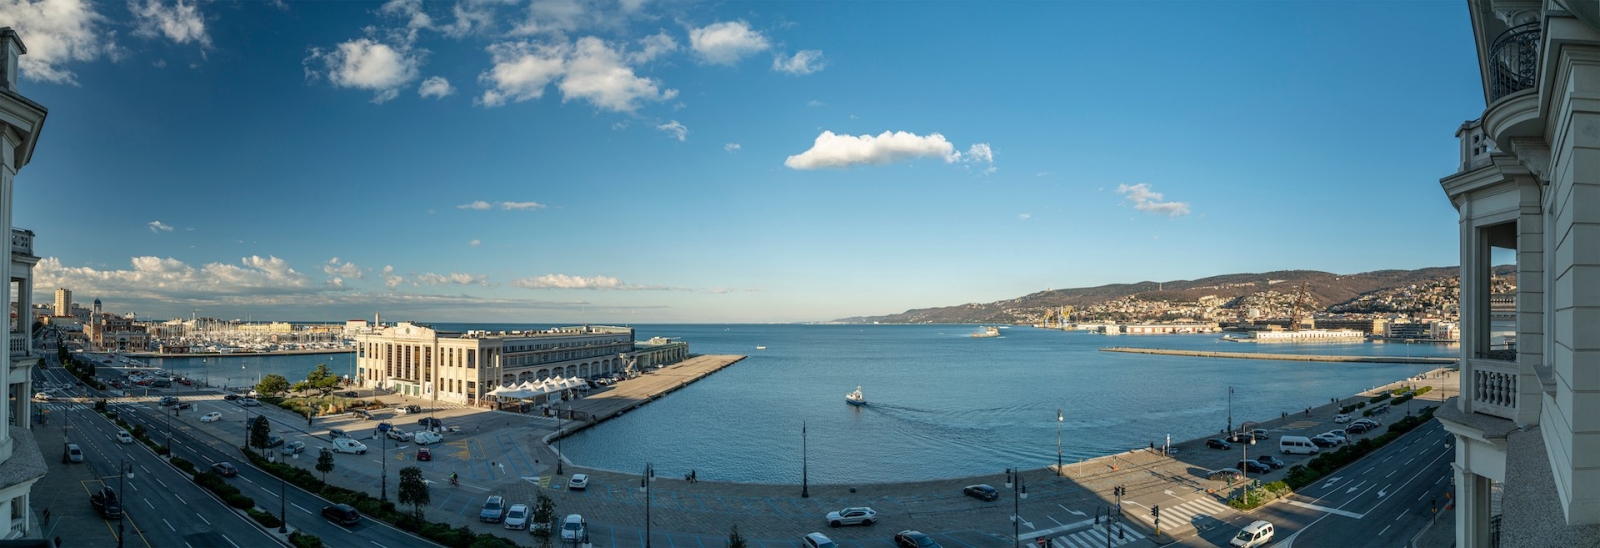 Paesaggio urbano di vista aerea di Trieste